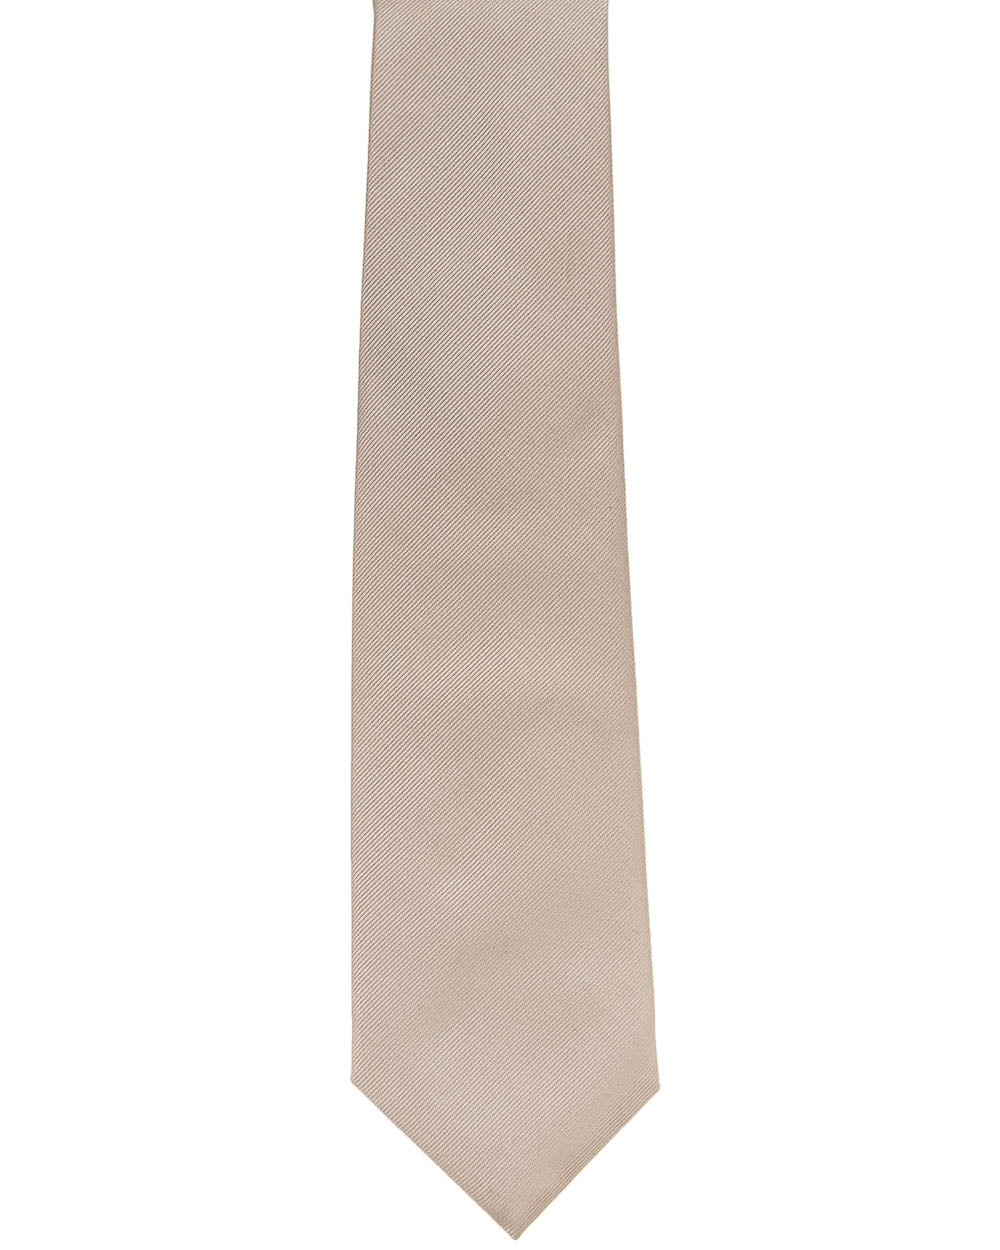 Silver Twill Tie